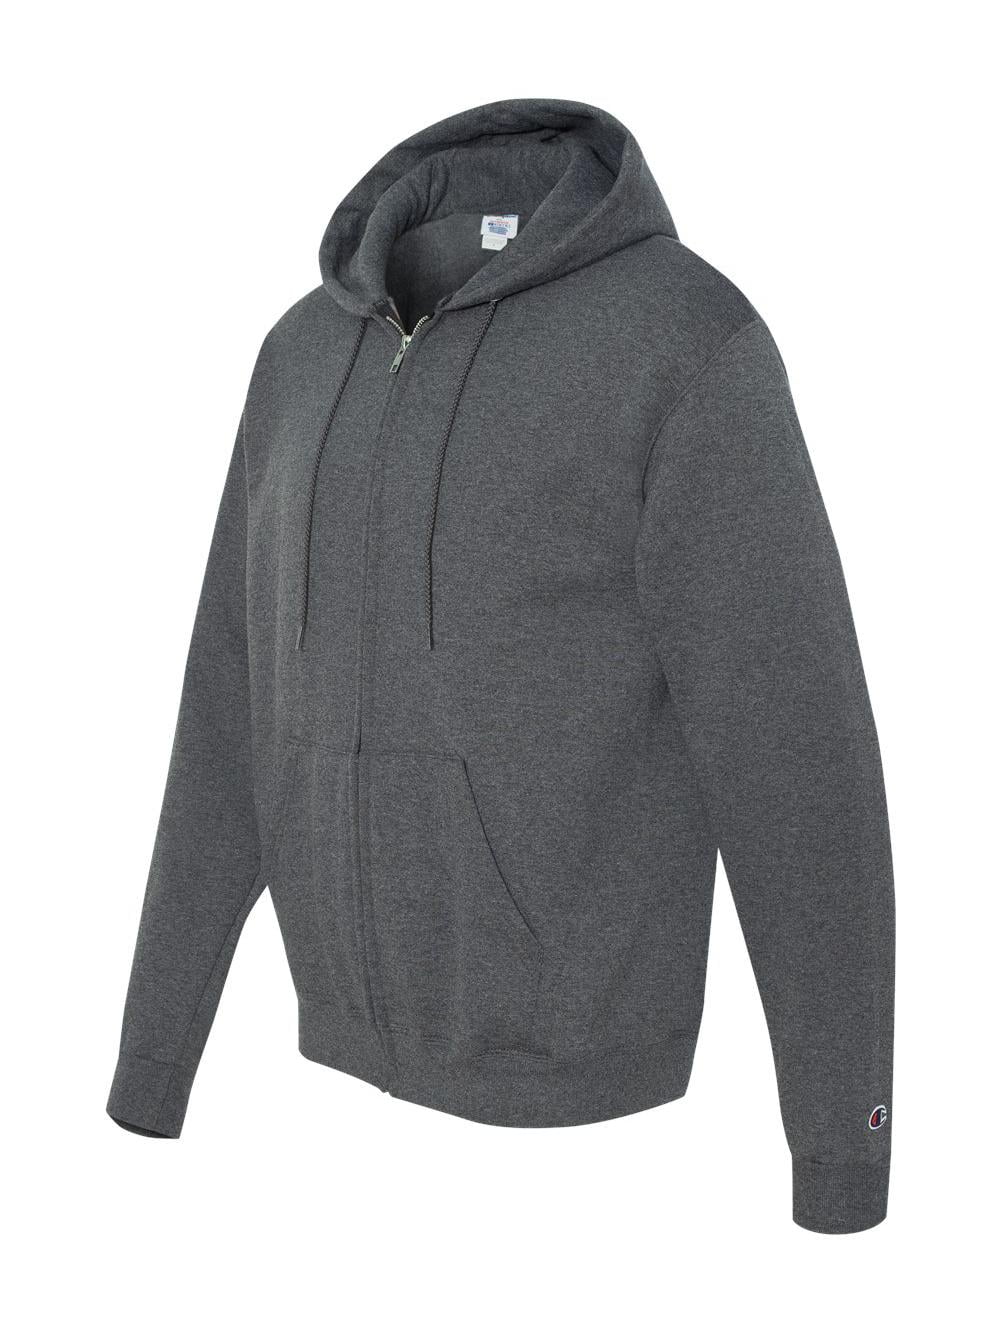 - Dry Eco Full-Zip Hooded Sweatshirt - S800 Walmart.com